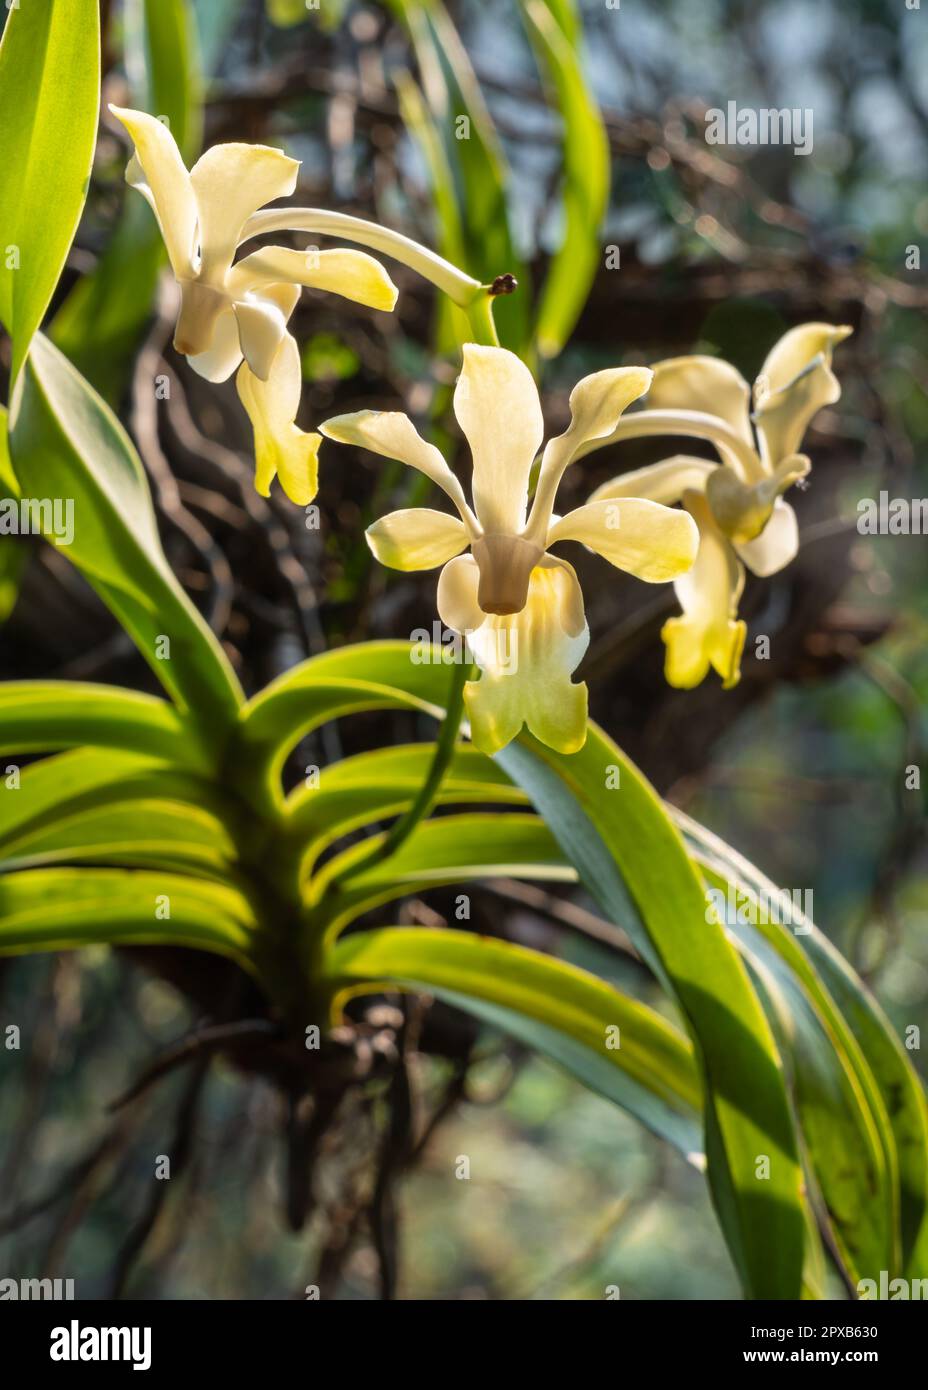 Gros plan sur les fleurs jaunes et blanches rétroéclairées de l'espèce d'orchidée épiphytique de vanda denisoniana qui fleurit à l'extérieur sur fond naturel Banque D'Images